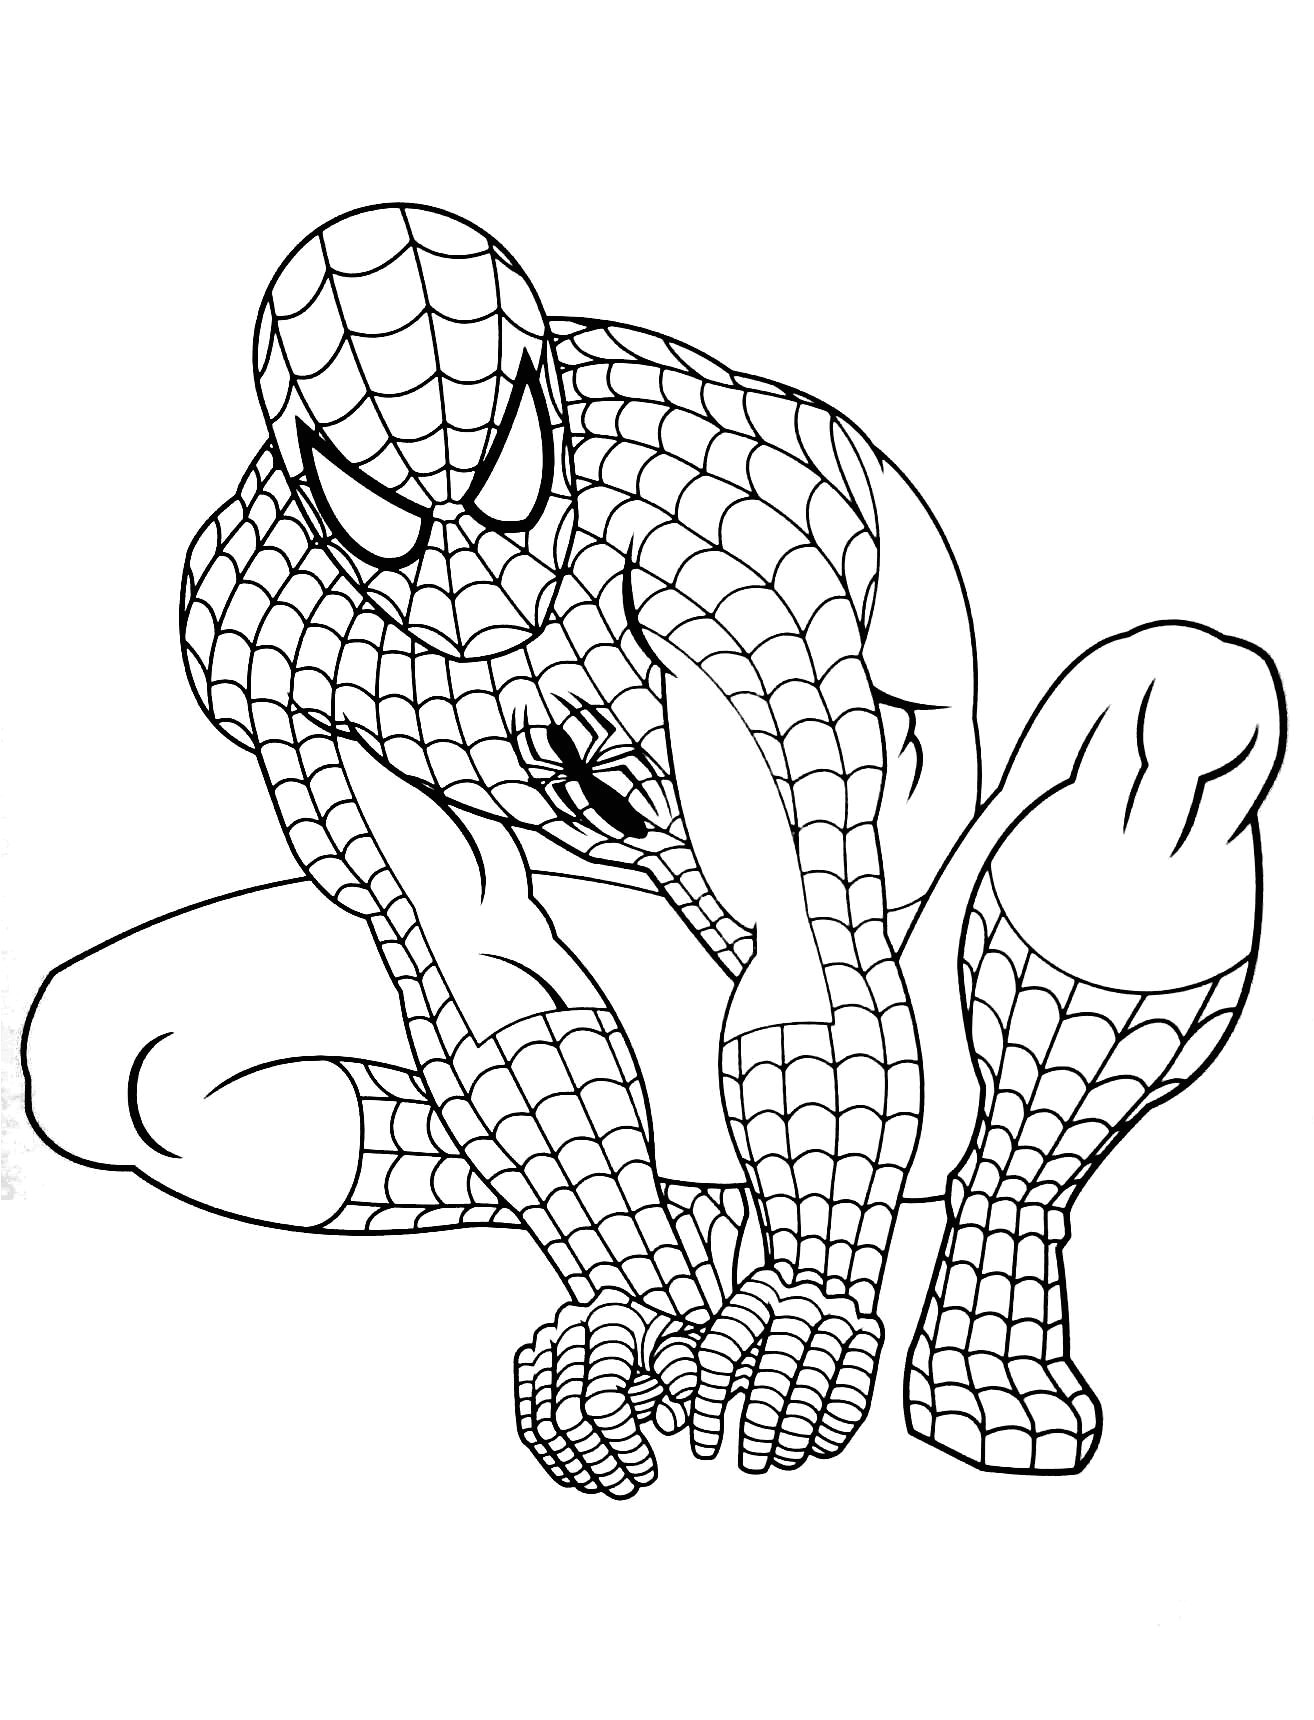 Coloriage Spiderman à Imprimer A4 Coloriage Imprimer format A4 Elégant Idées Dessins De Coloriage